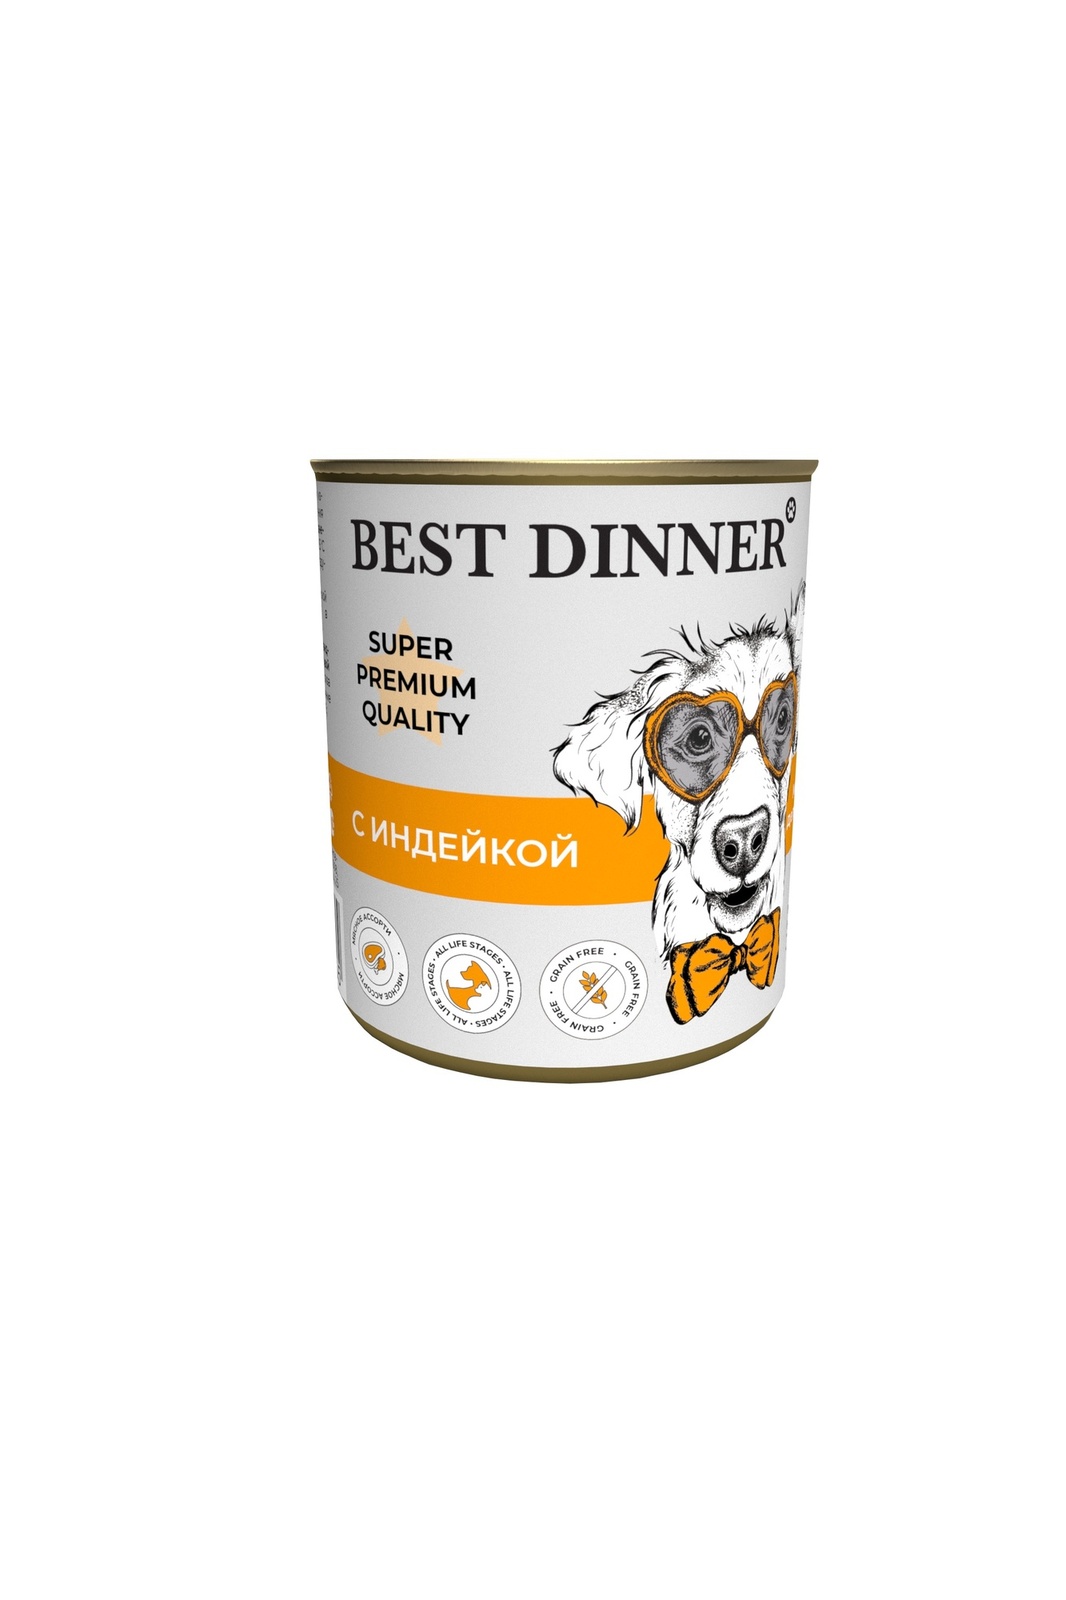 Best Dinner Best Dinner консервы для собак Super Premium С индейкой (340 г) best dinner best dinner консервы ягненок с сердцем для собак с чувствительным пищеварением 340 г